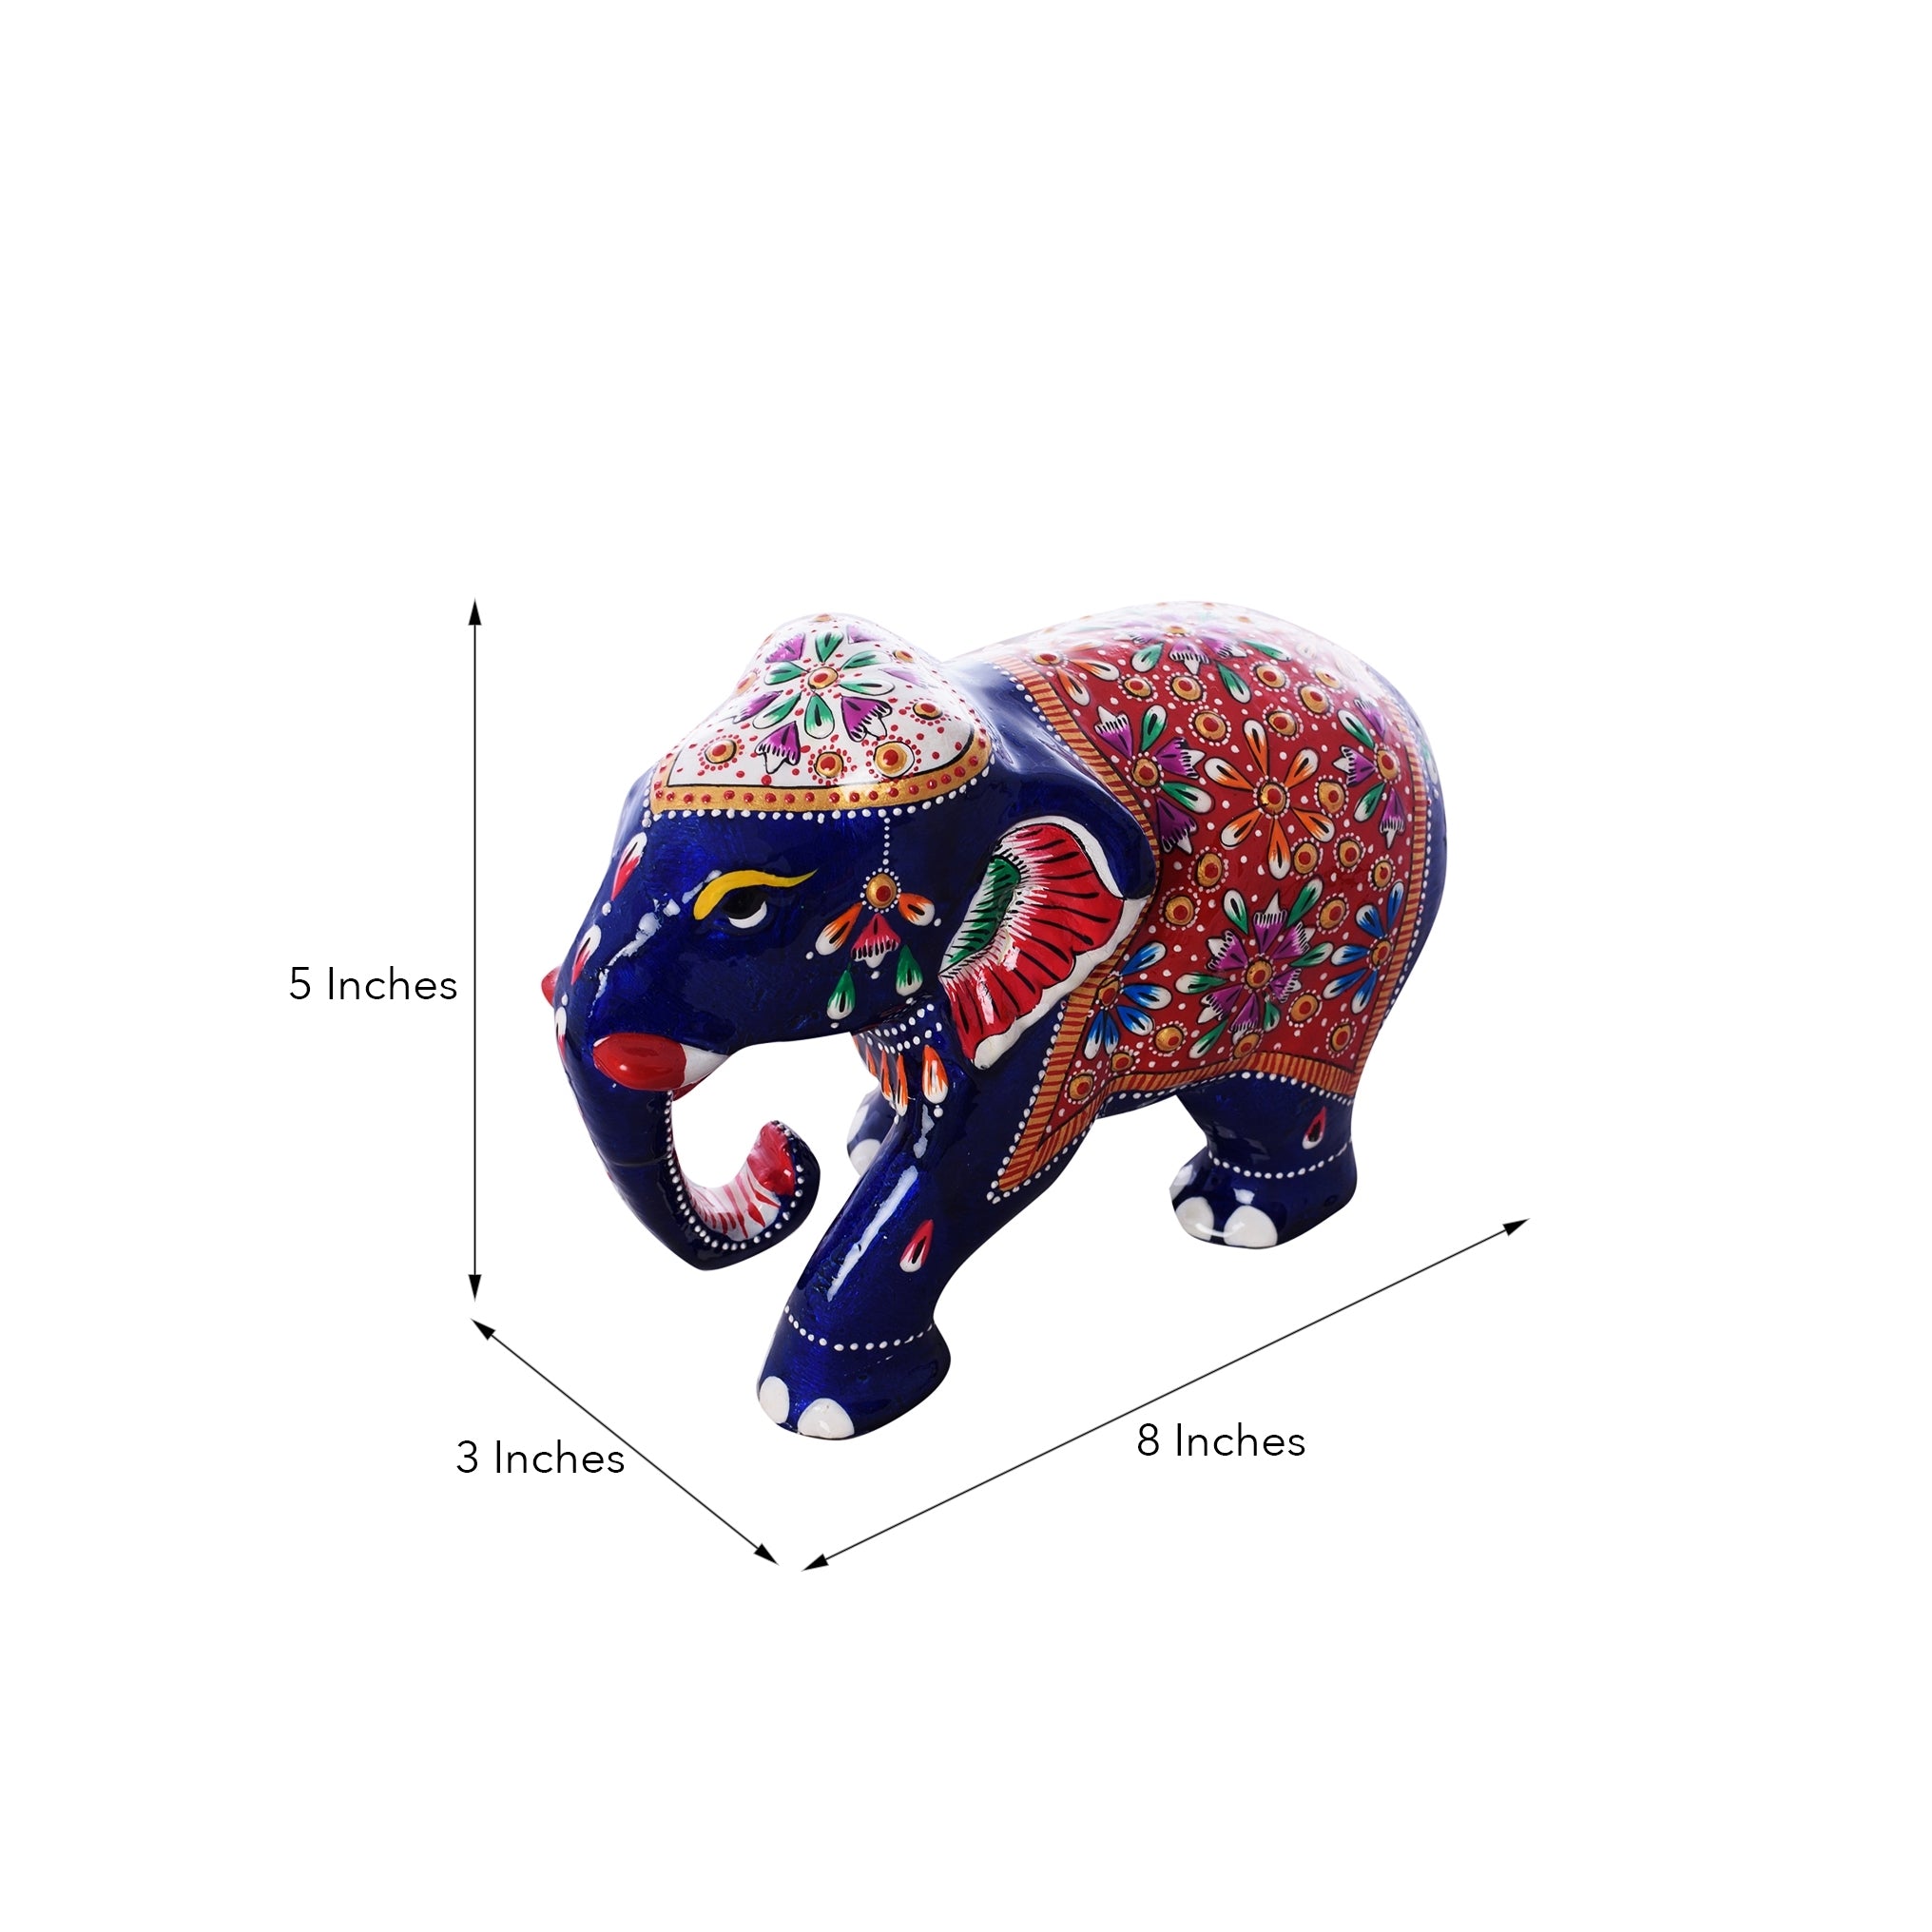 Colorful Meenakari Elephant Figurine 2